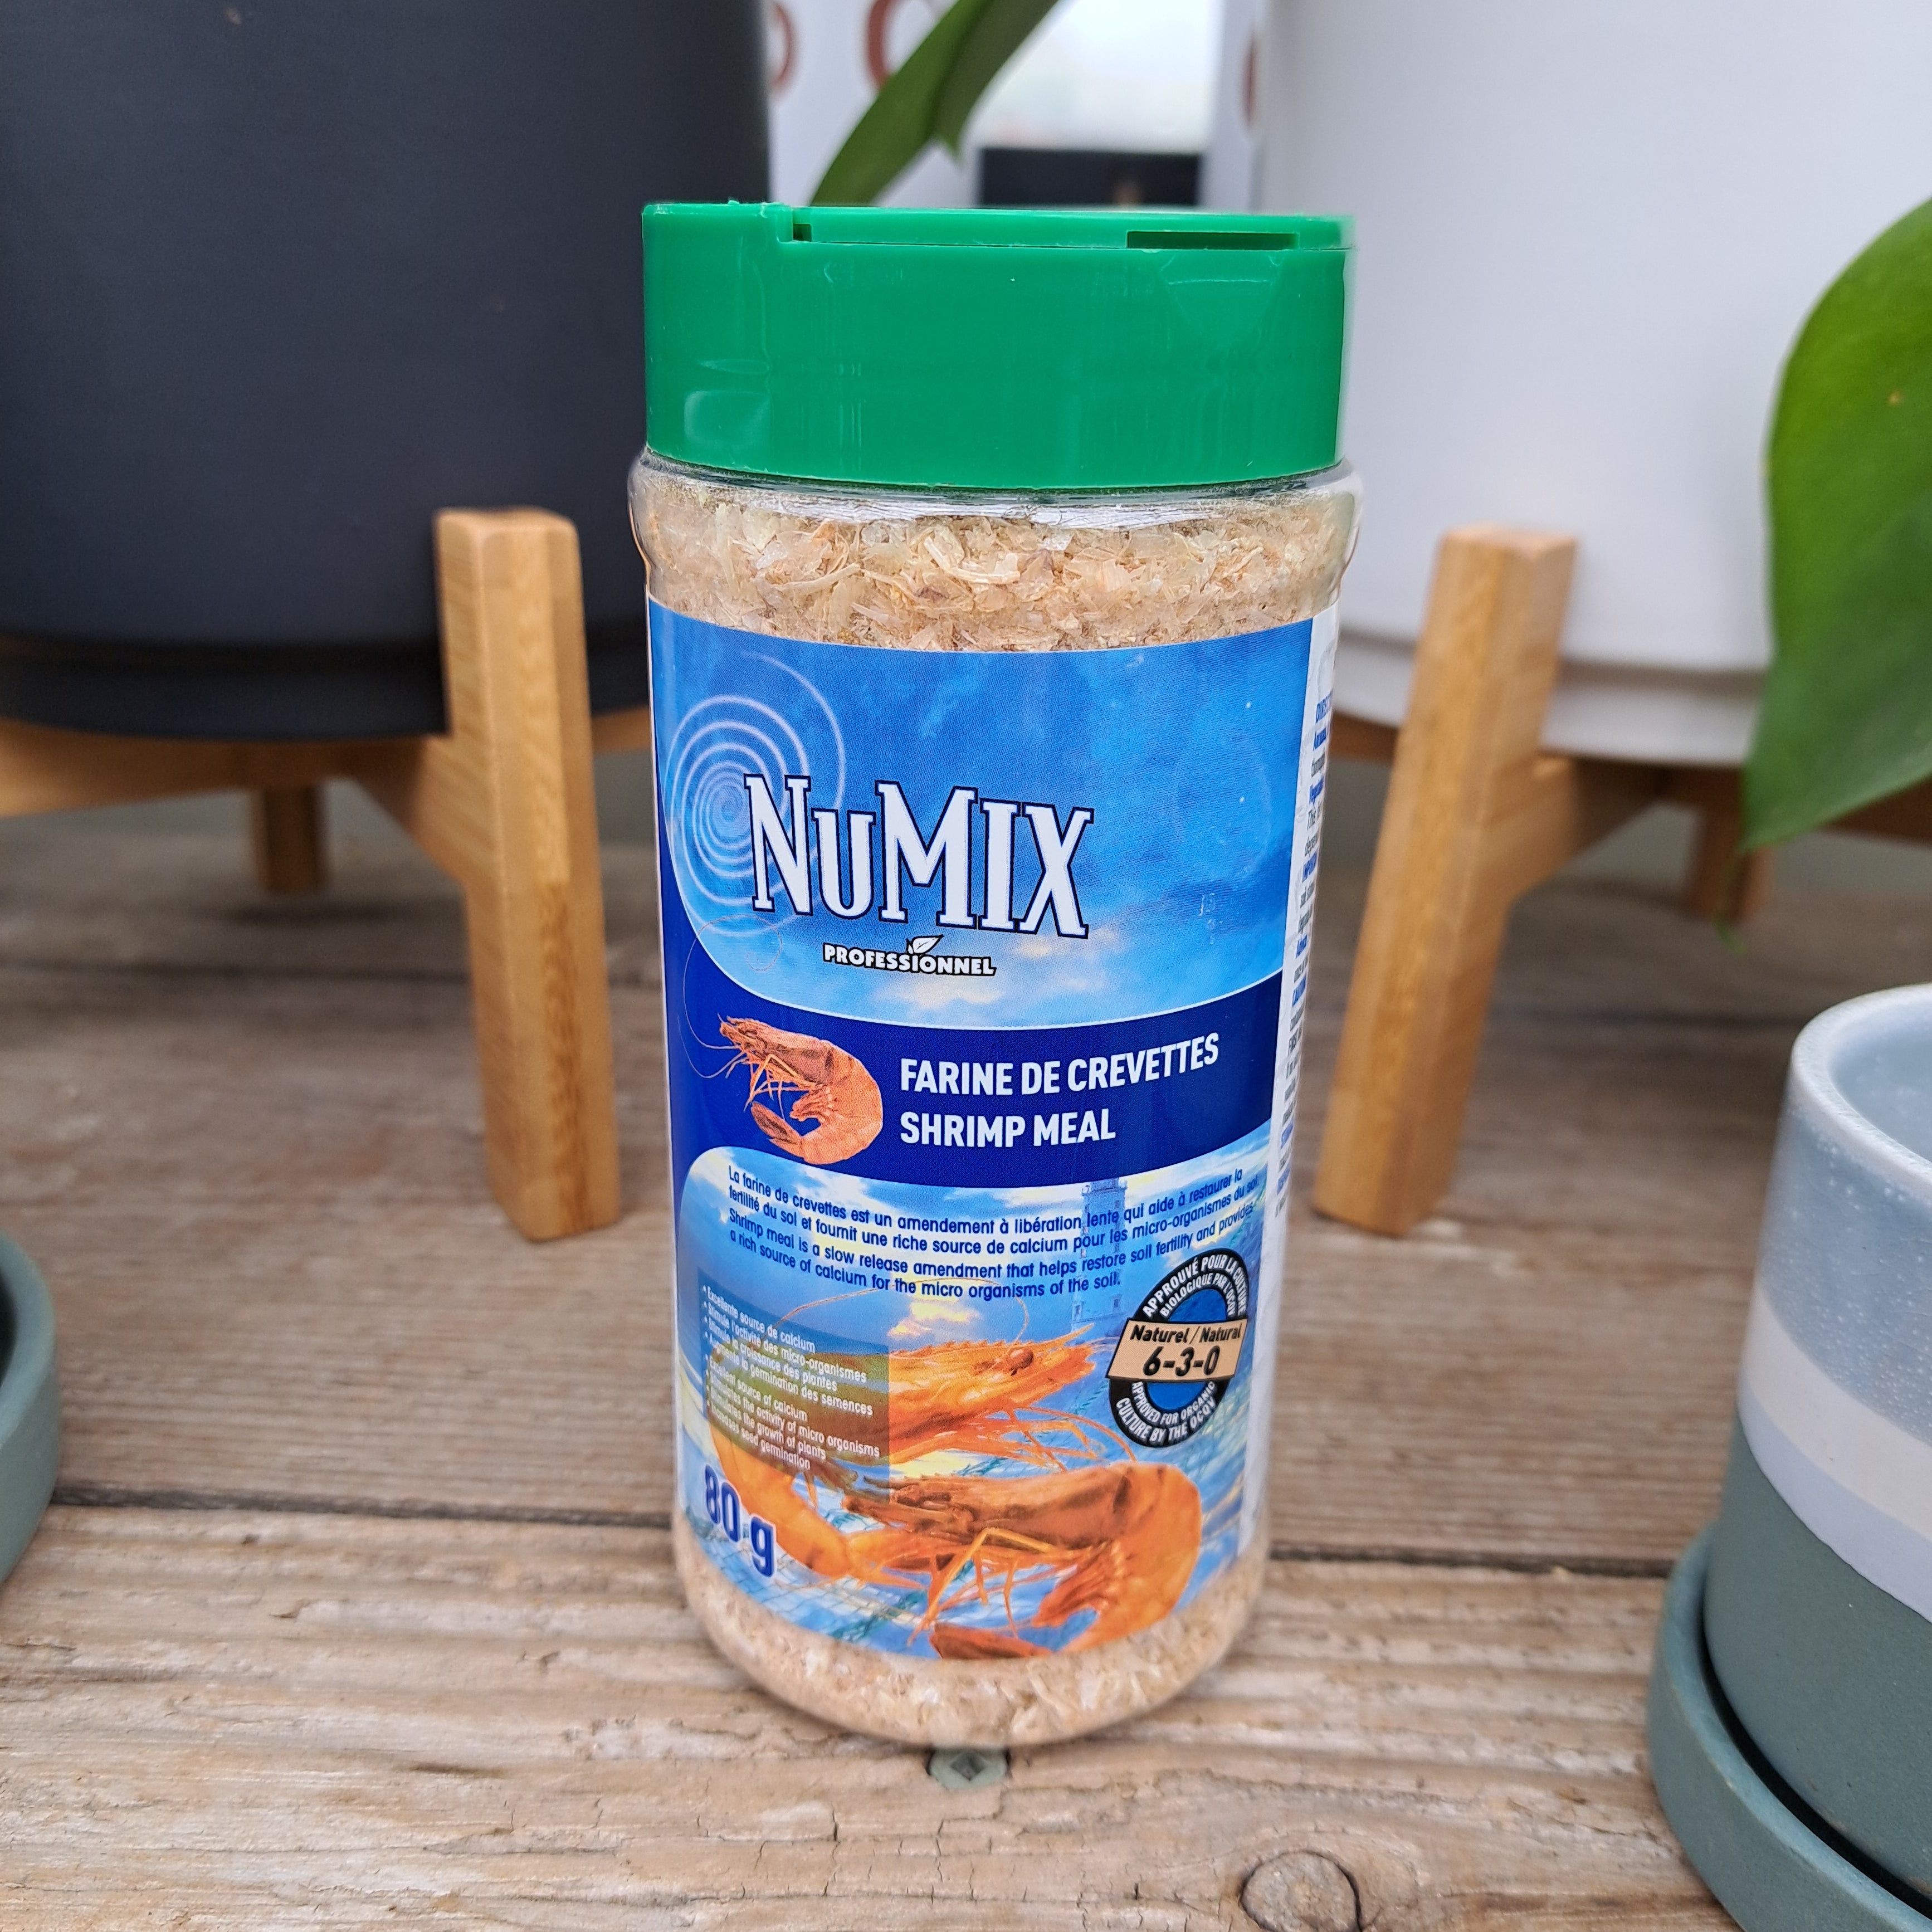 Numix shrimp flour